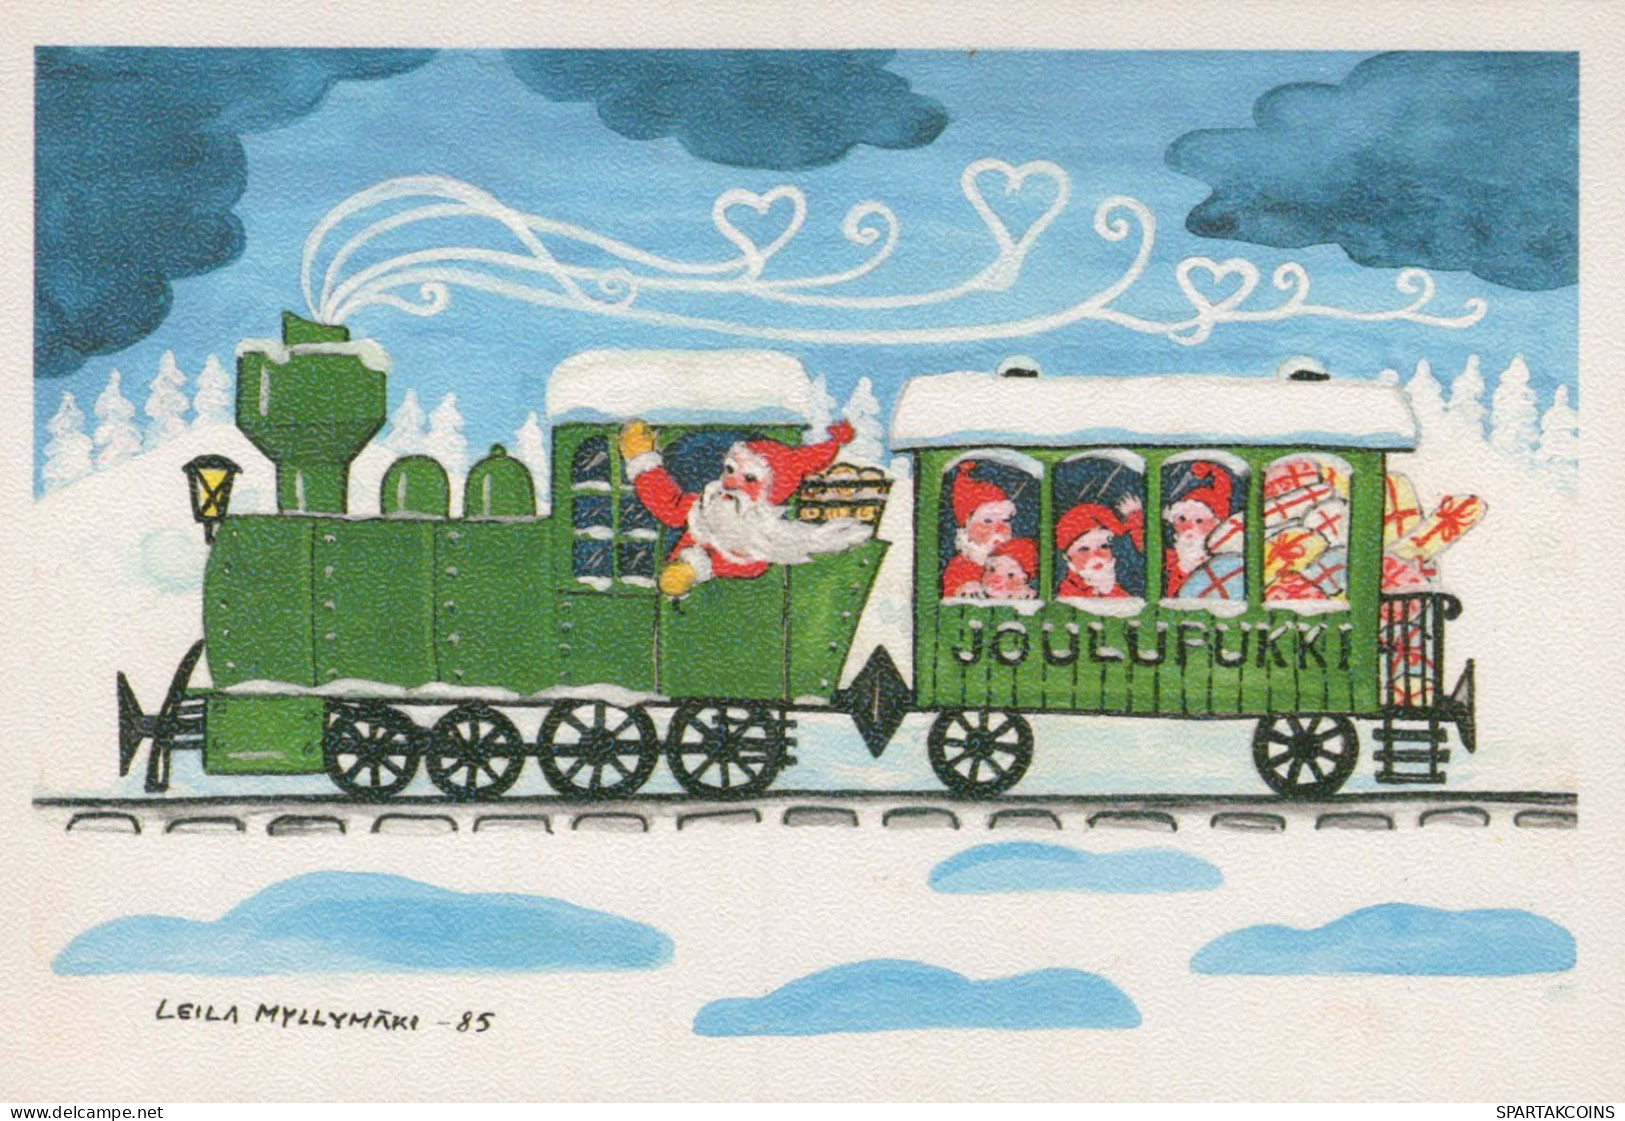 PÈRE NOËL Bonne Année Noël GNOME Vintage Carte Postale CPSM #PBL691.A - Santa Claus